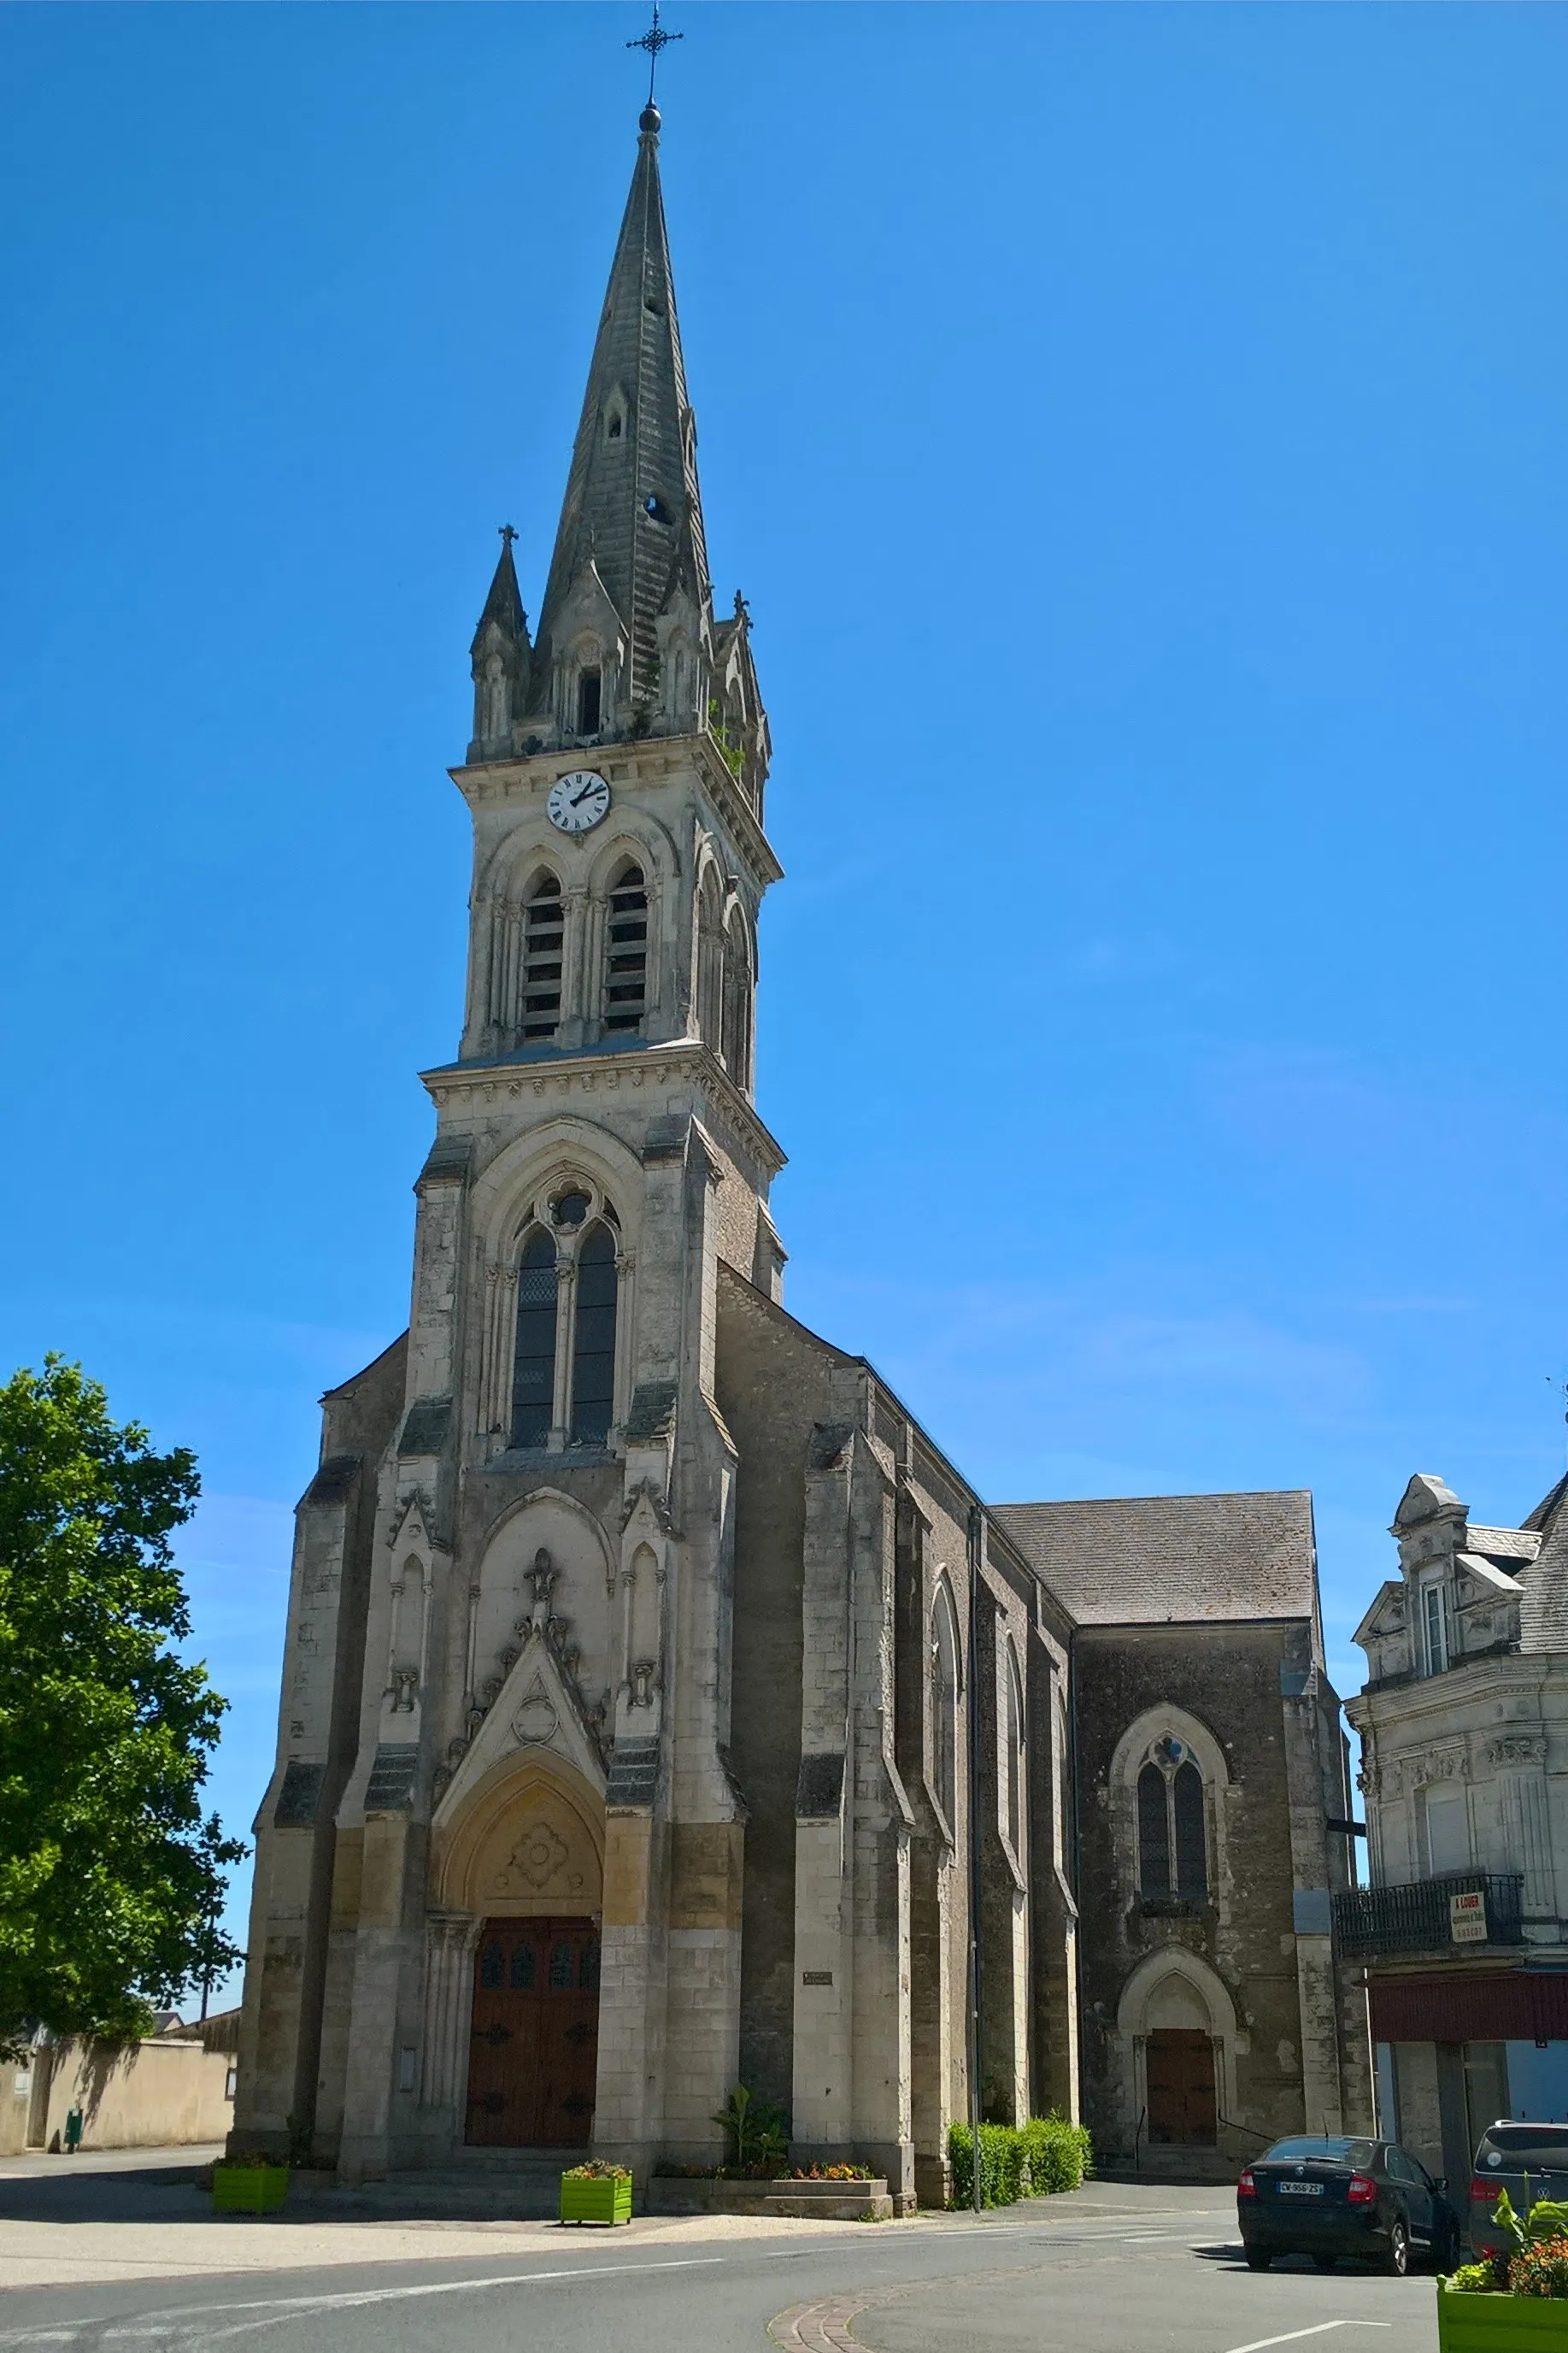 Image de Pays de la Loire